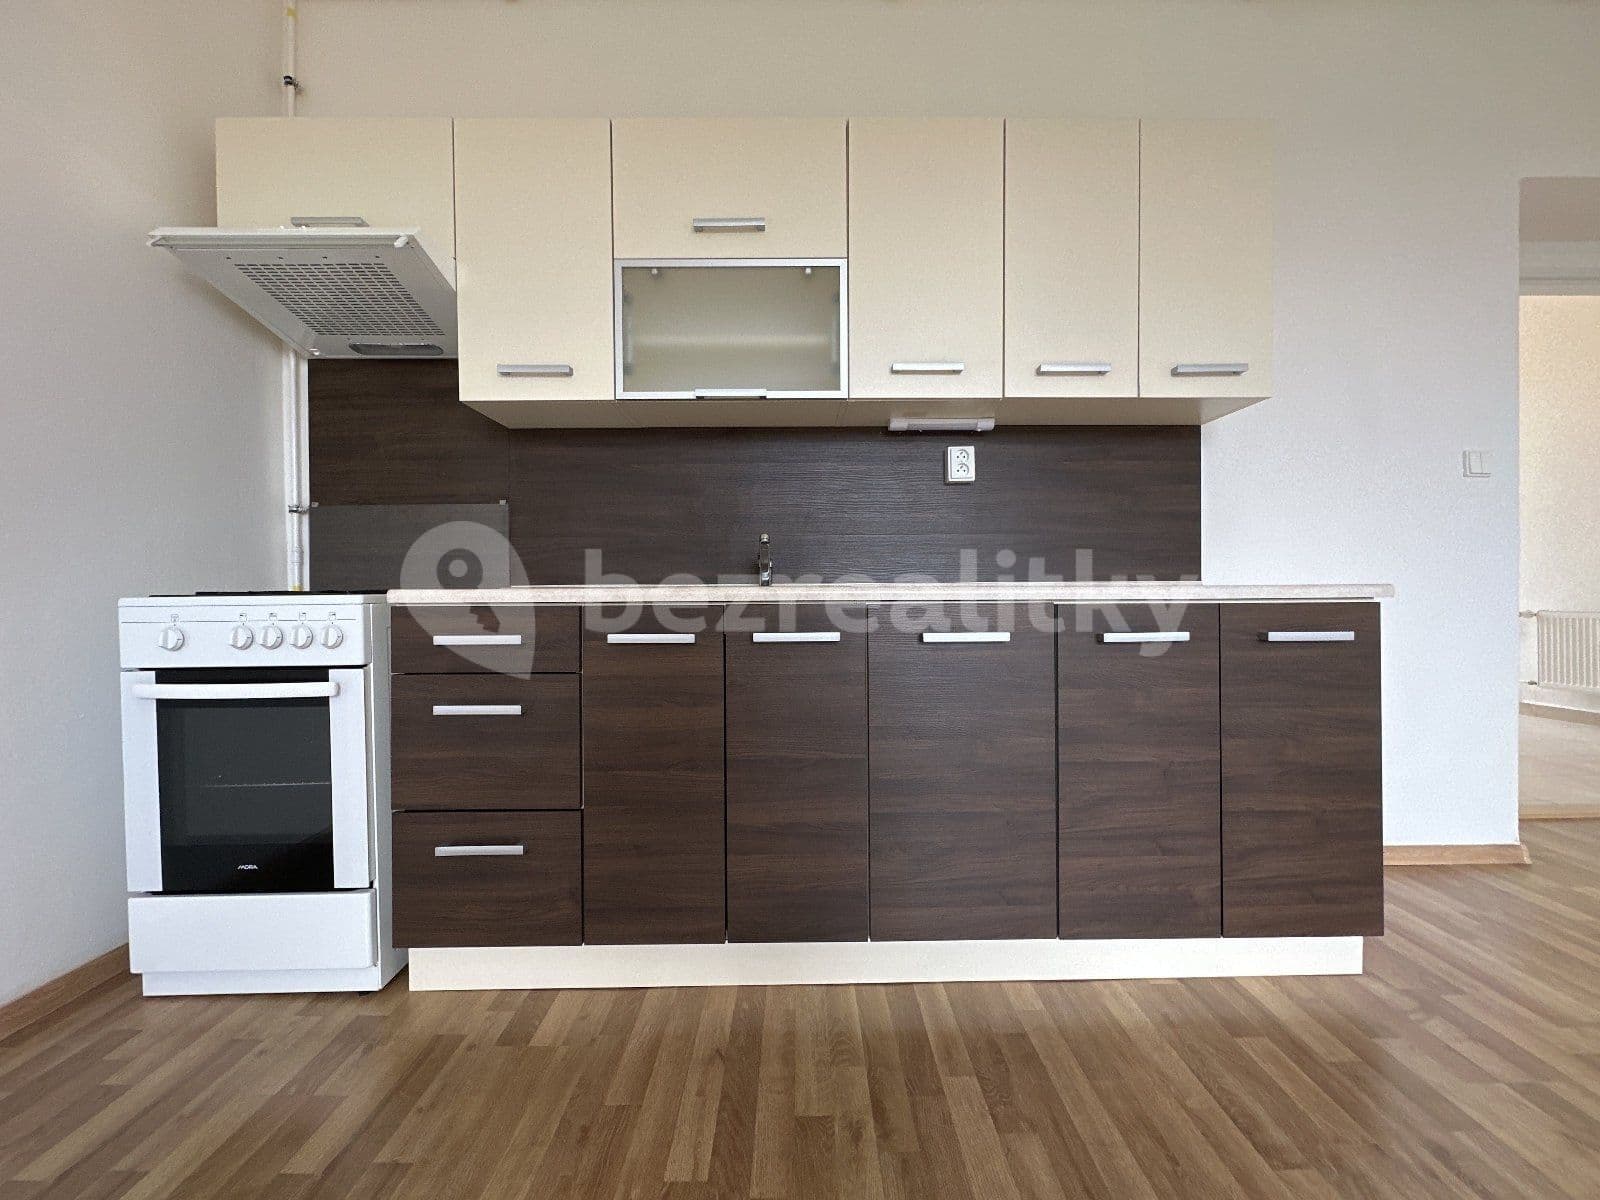 1 bedroom with open-plan kitchen flat to rent, 51 m², Zvoníčkova, Ostrava, Moravskoslezský Region